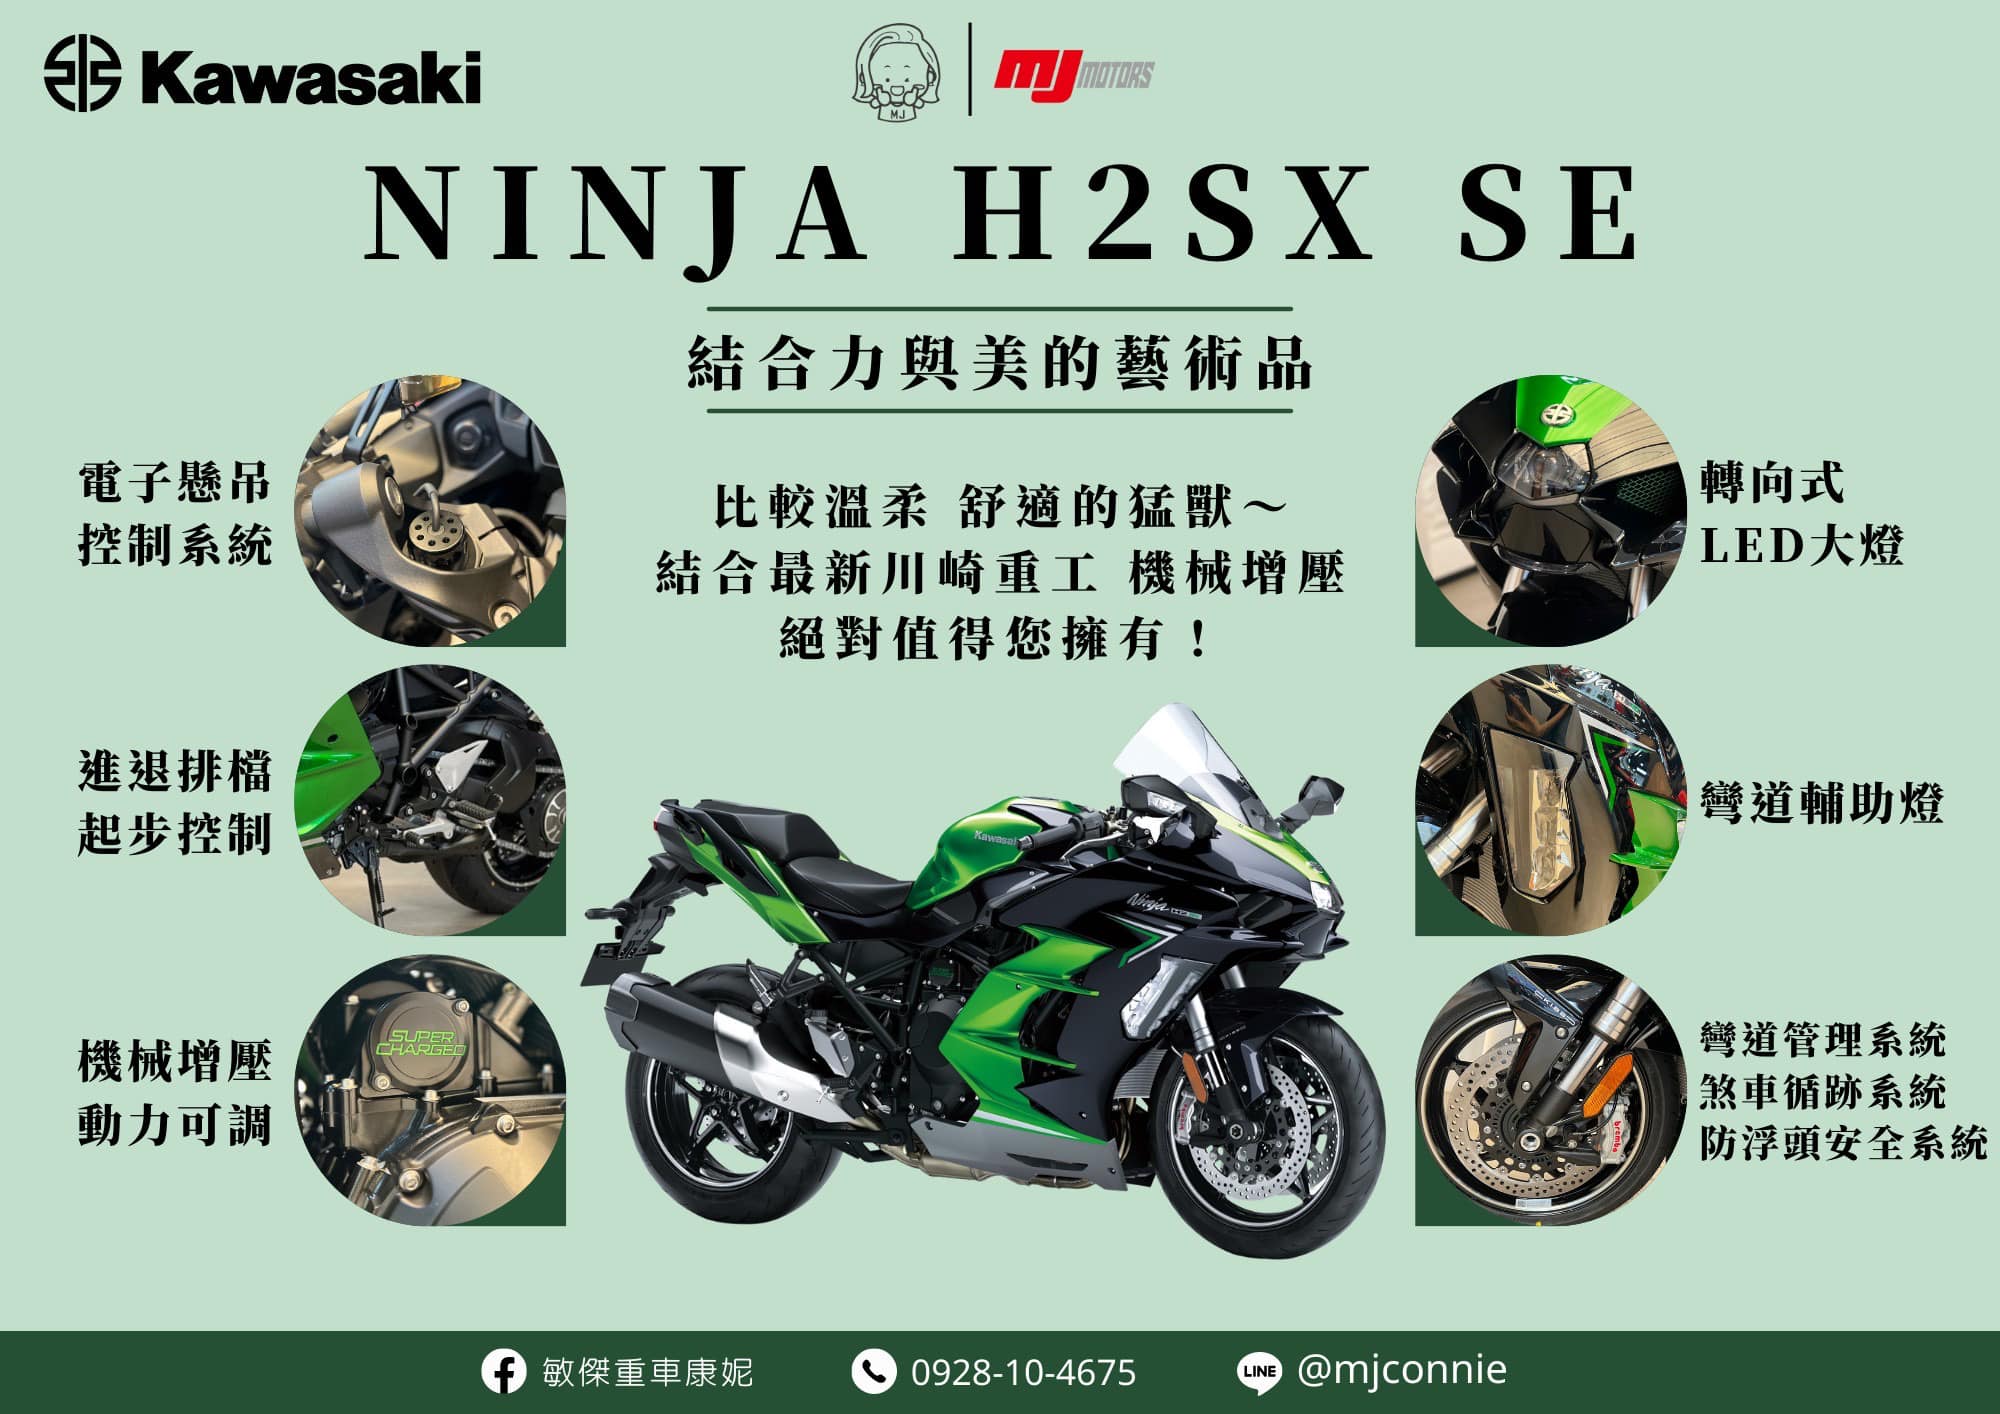 【敏傑車業資深銷售專員 康妮 Connie】KAWASAKI Ninja H2 SX - 「Webike-摩托車市」 『敏傑康妮』Kawasaki H2SX SE 低利率方案實施中 給您最滿意的服務 請訊息給康妮